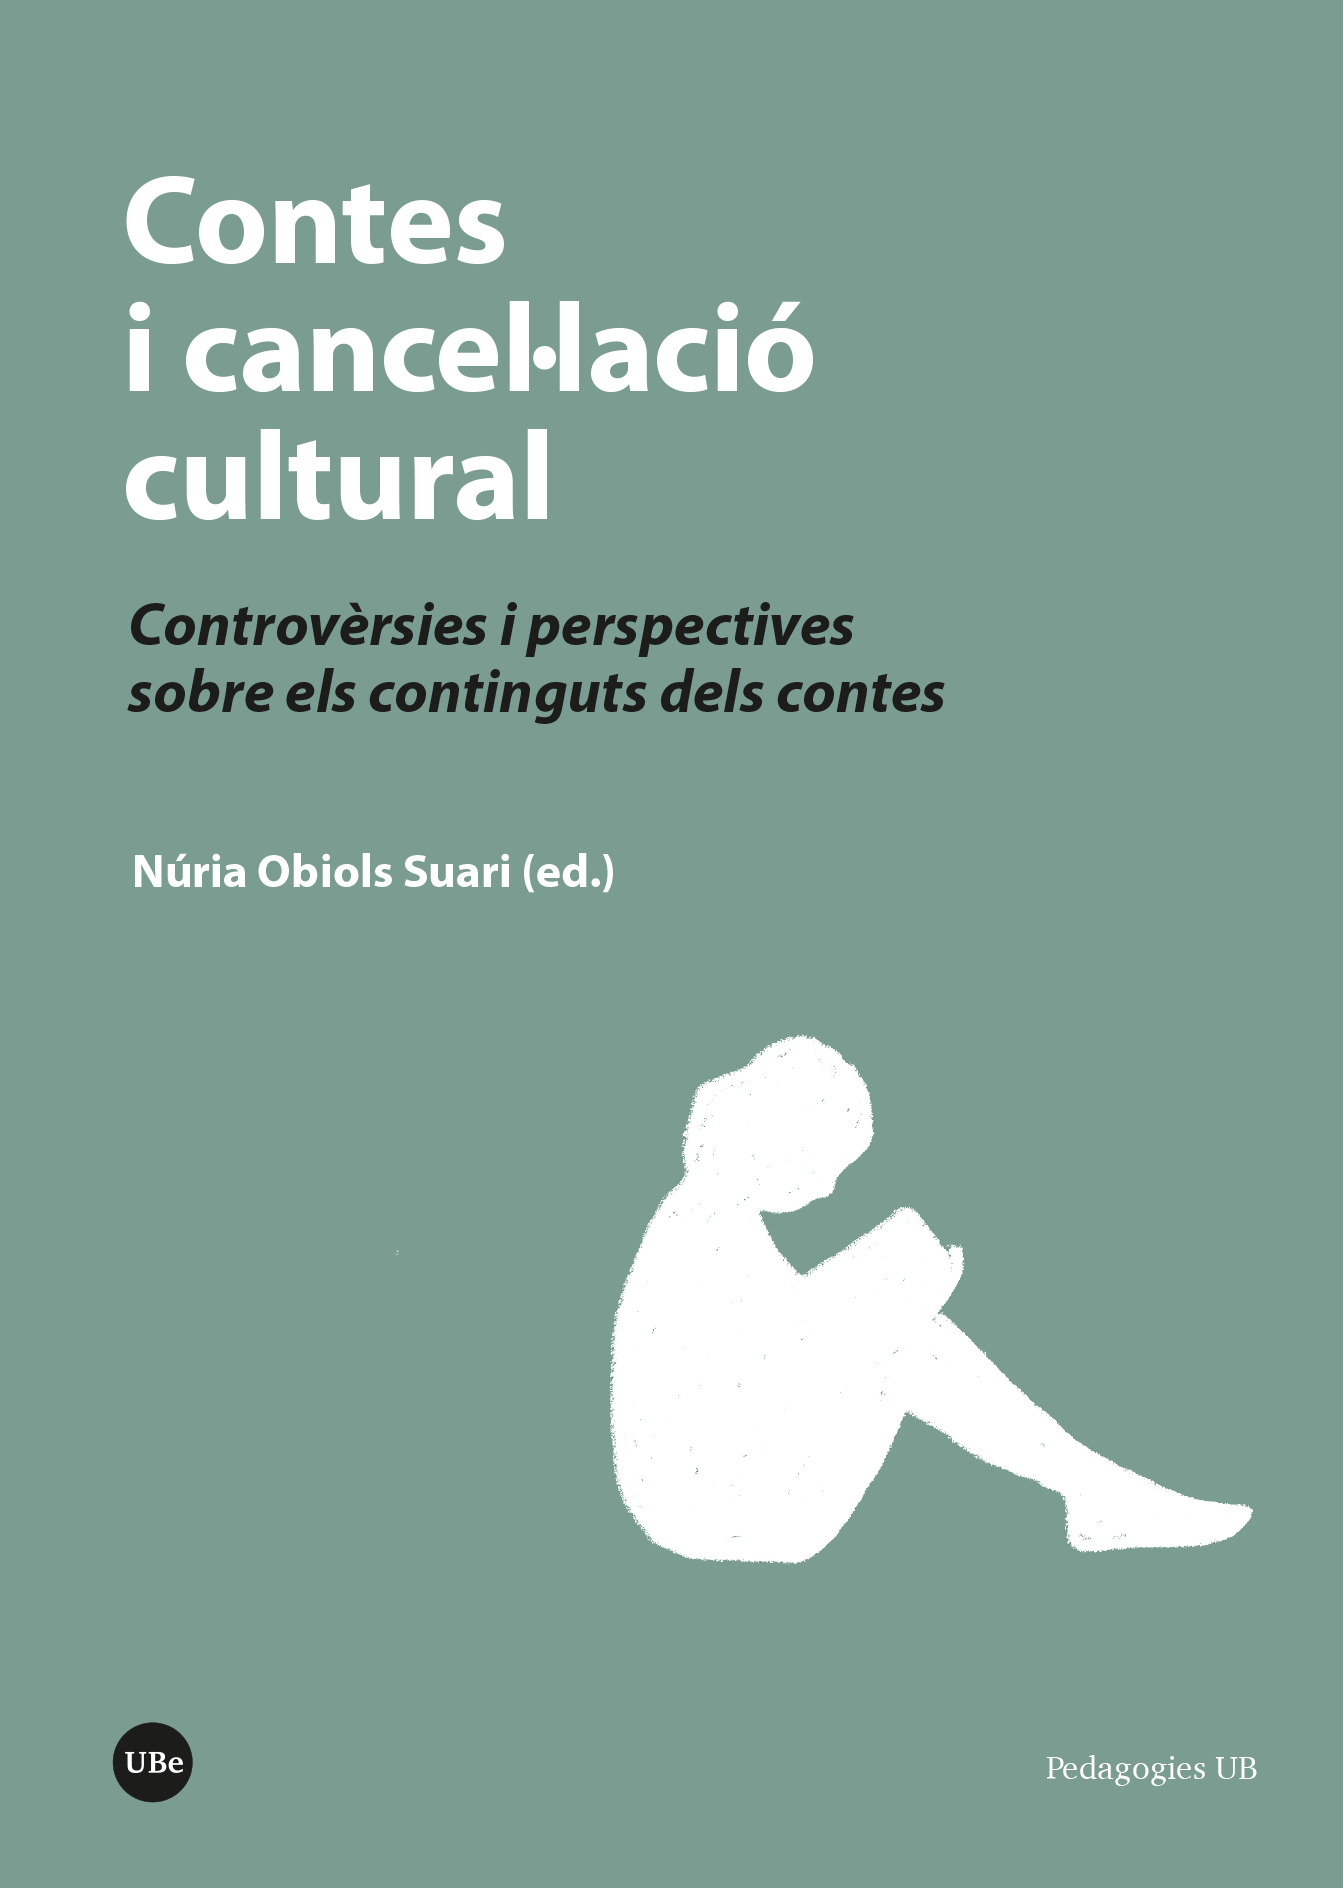 <p>Contes i cancel·lació cultural</p>